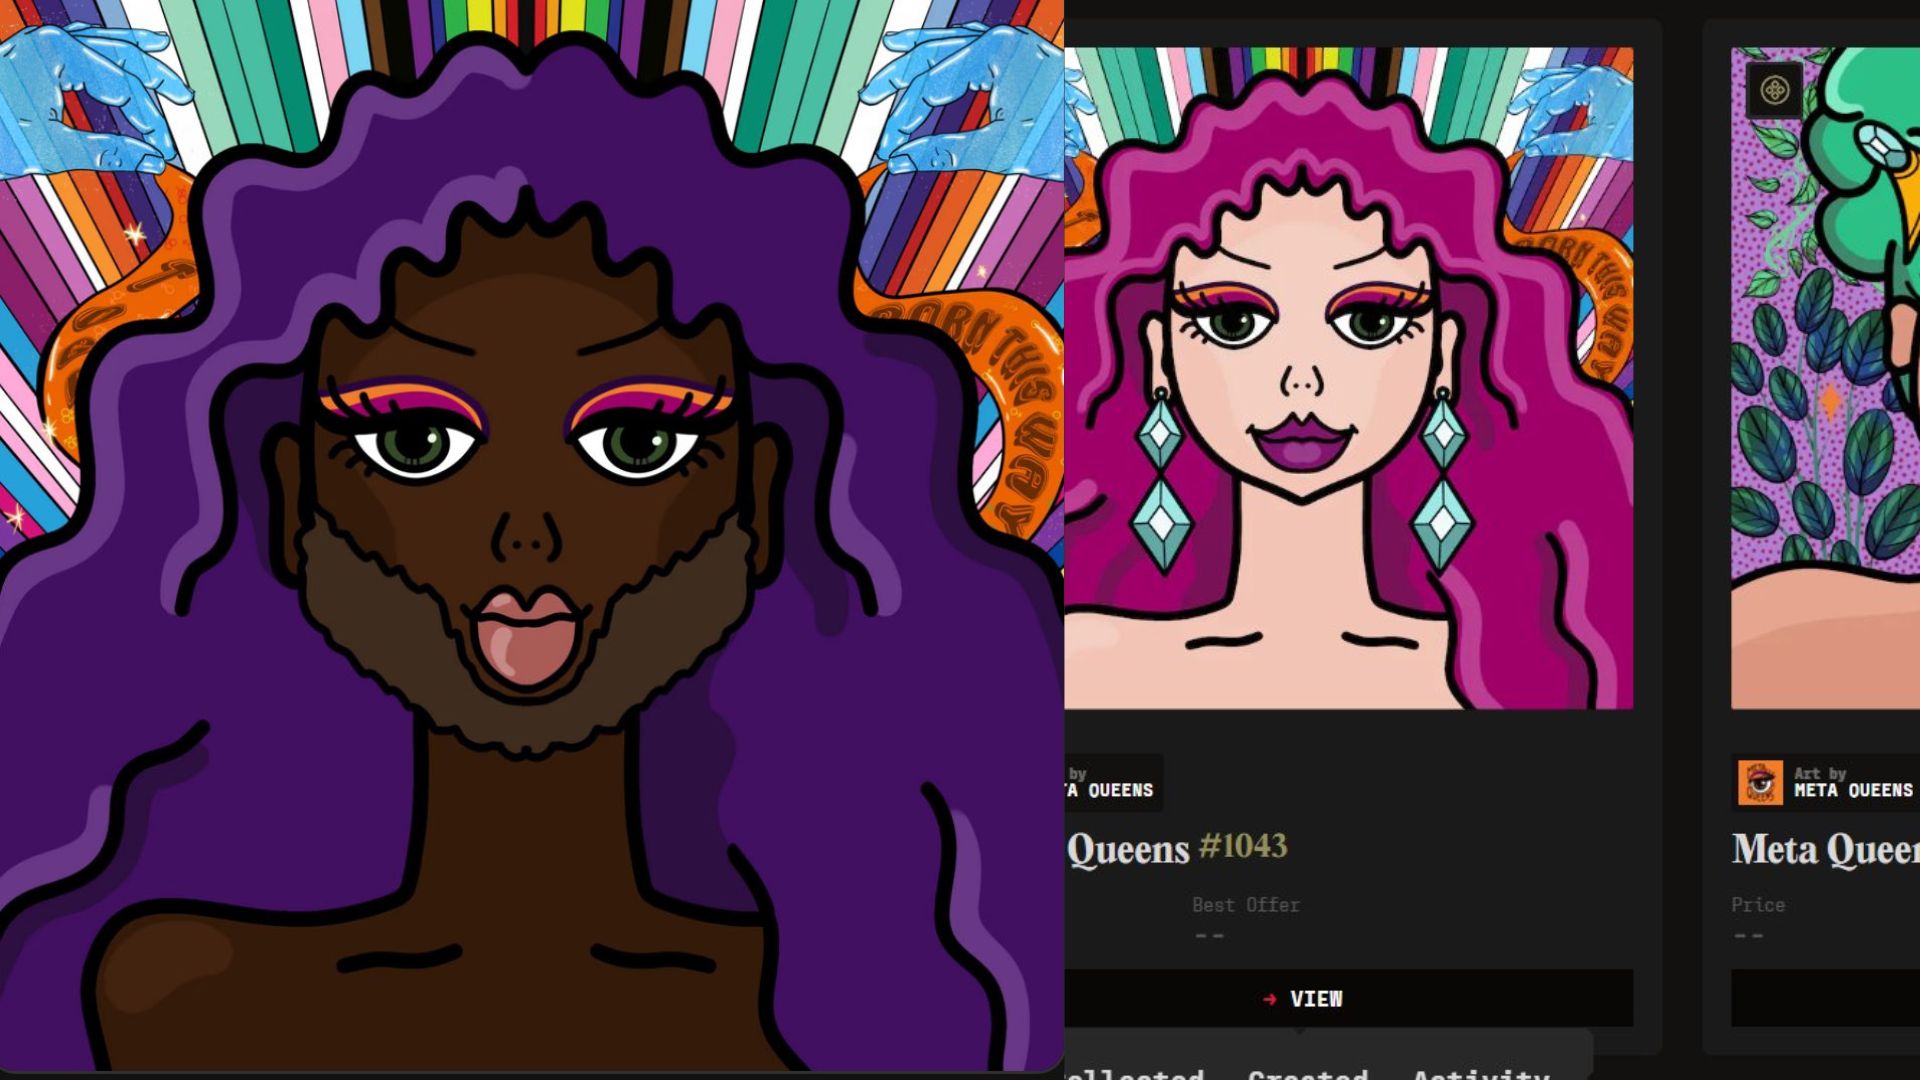 captures d'écran de l'art drag LGBTQ réalisé par des méta-reines sur le marché de la prohibition